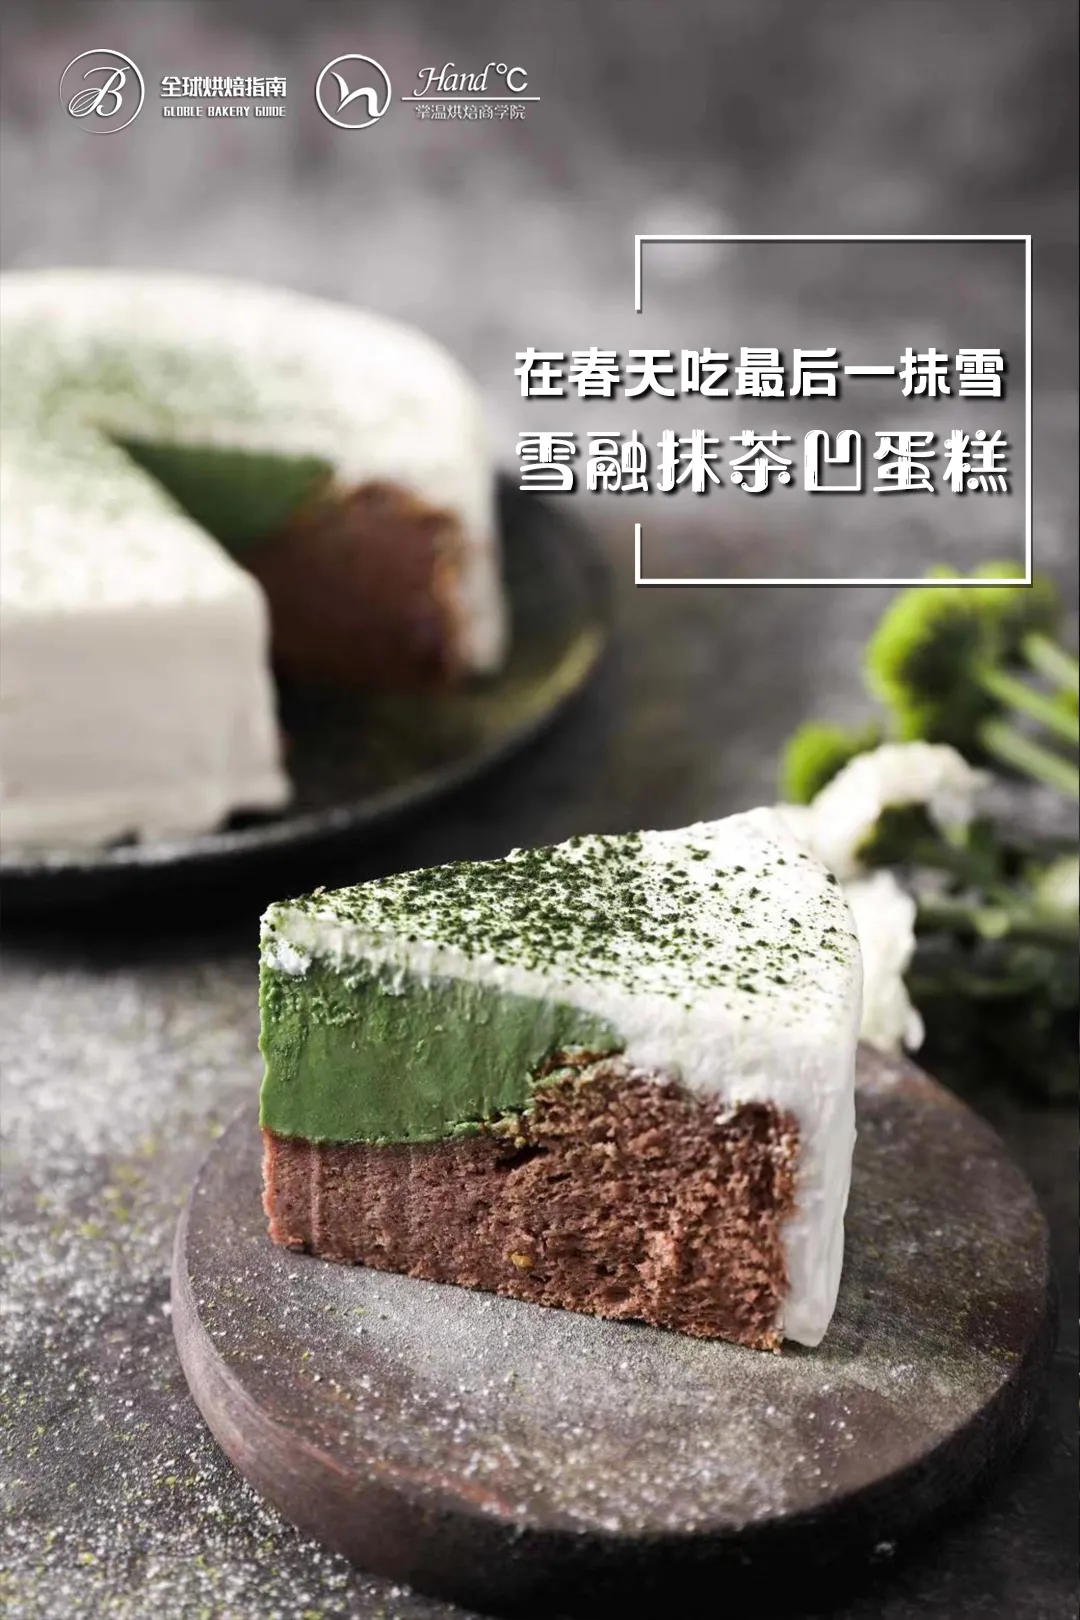 雪融抹茶凹蛋糕 | 日本最火爆蛋糕之一的做法